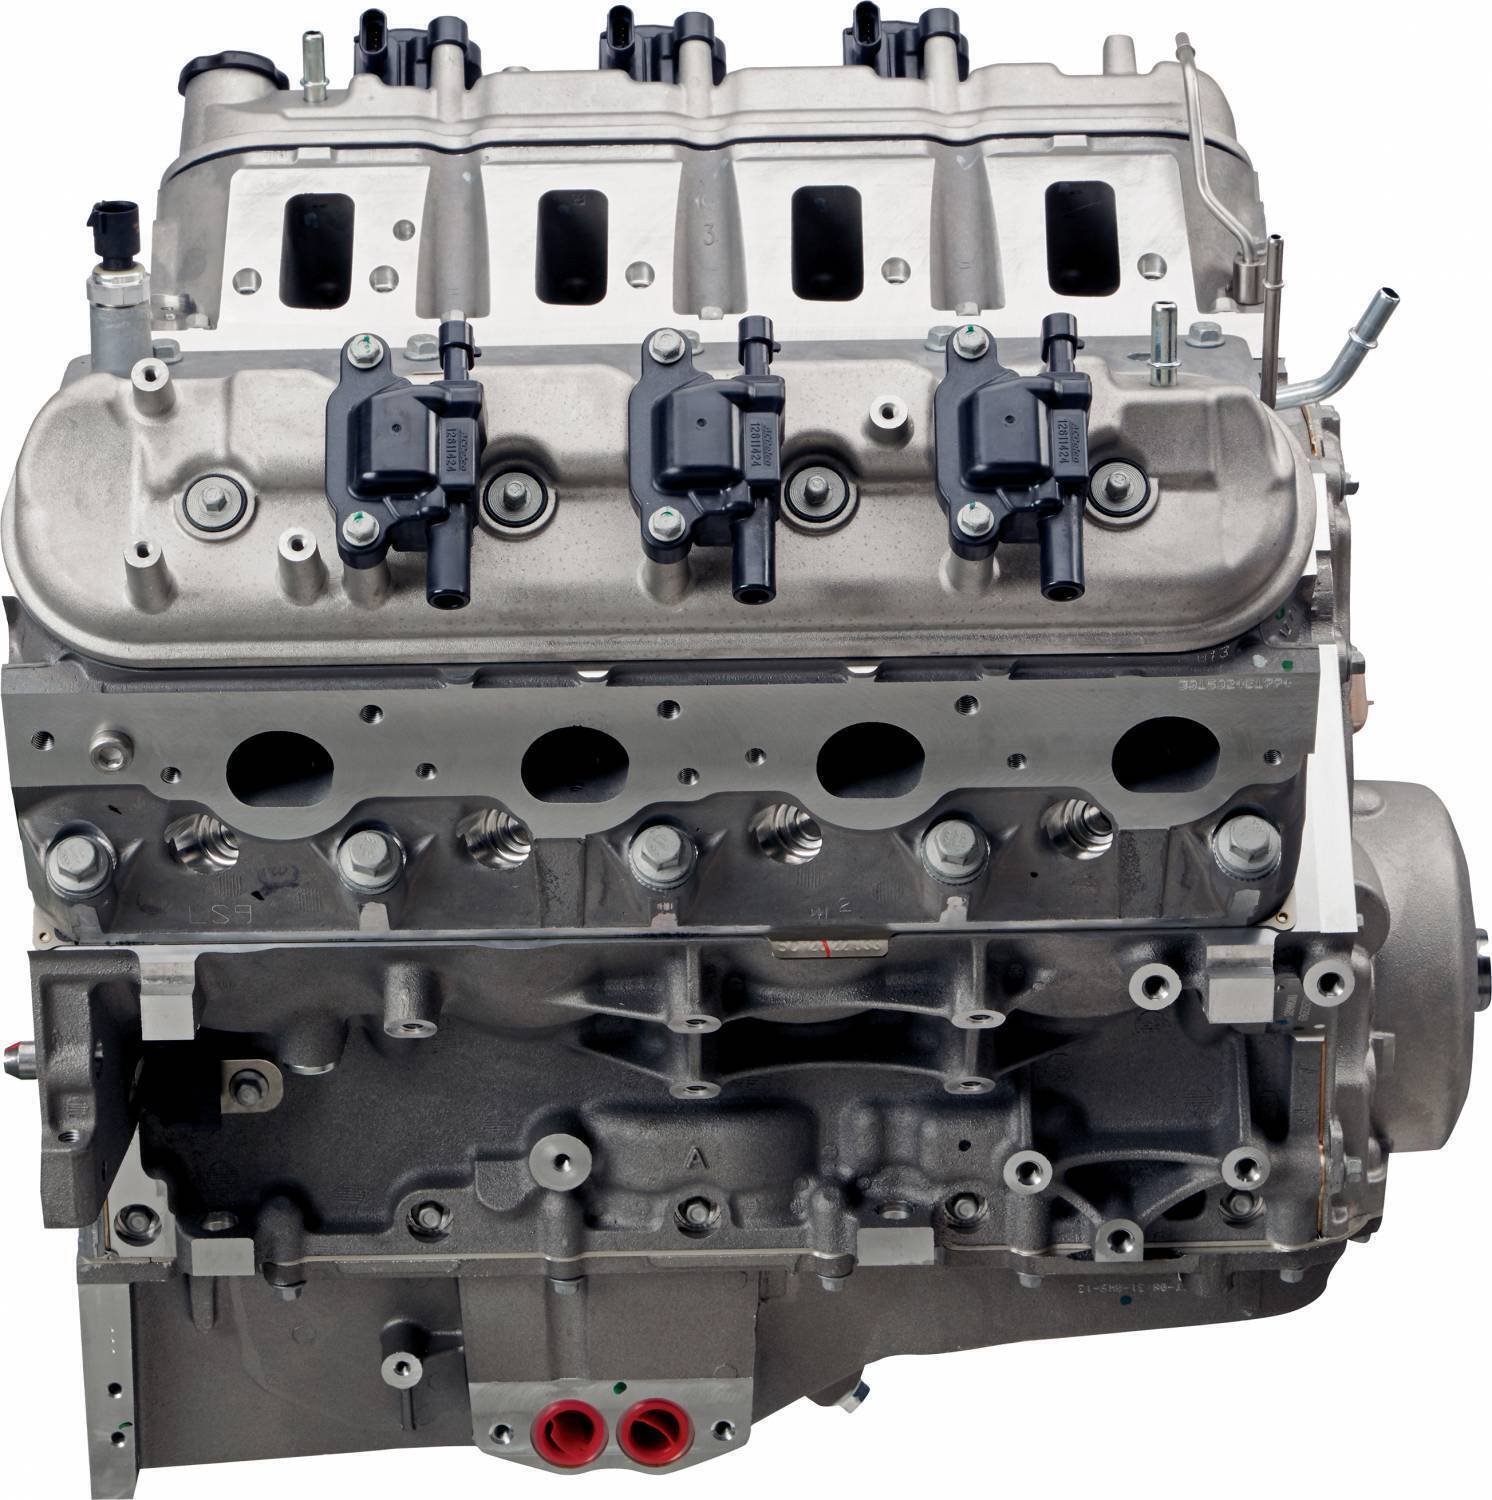 HSV Holden Chev LS9 V8 6.2L Engine Motor Crate Long V8 638HP GM # 12624262